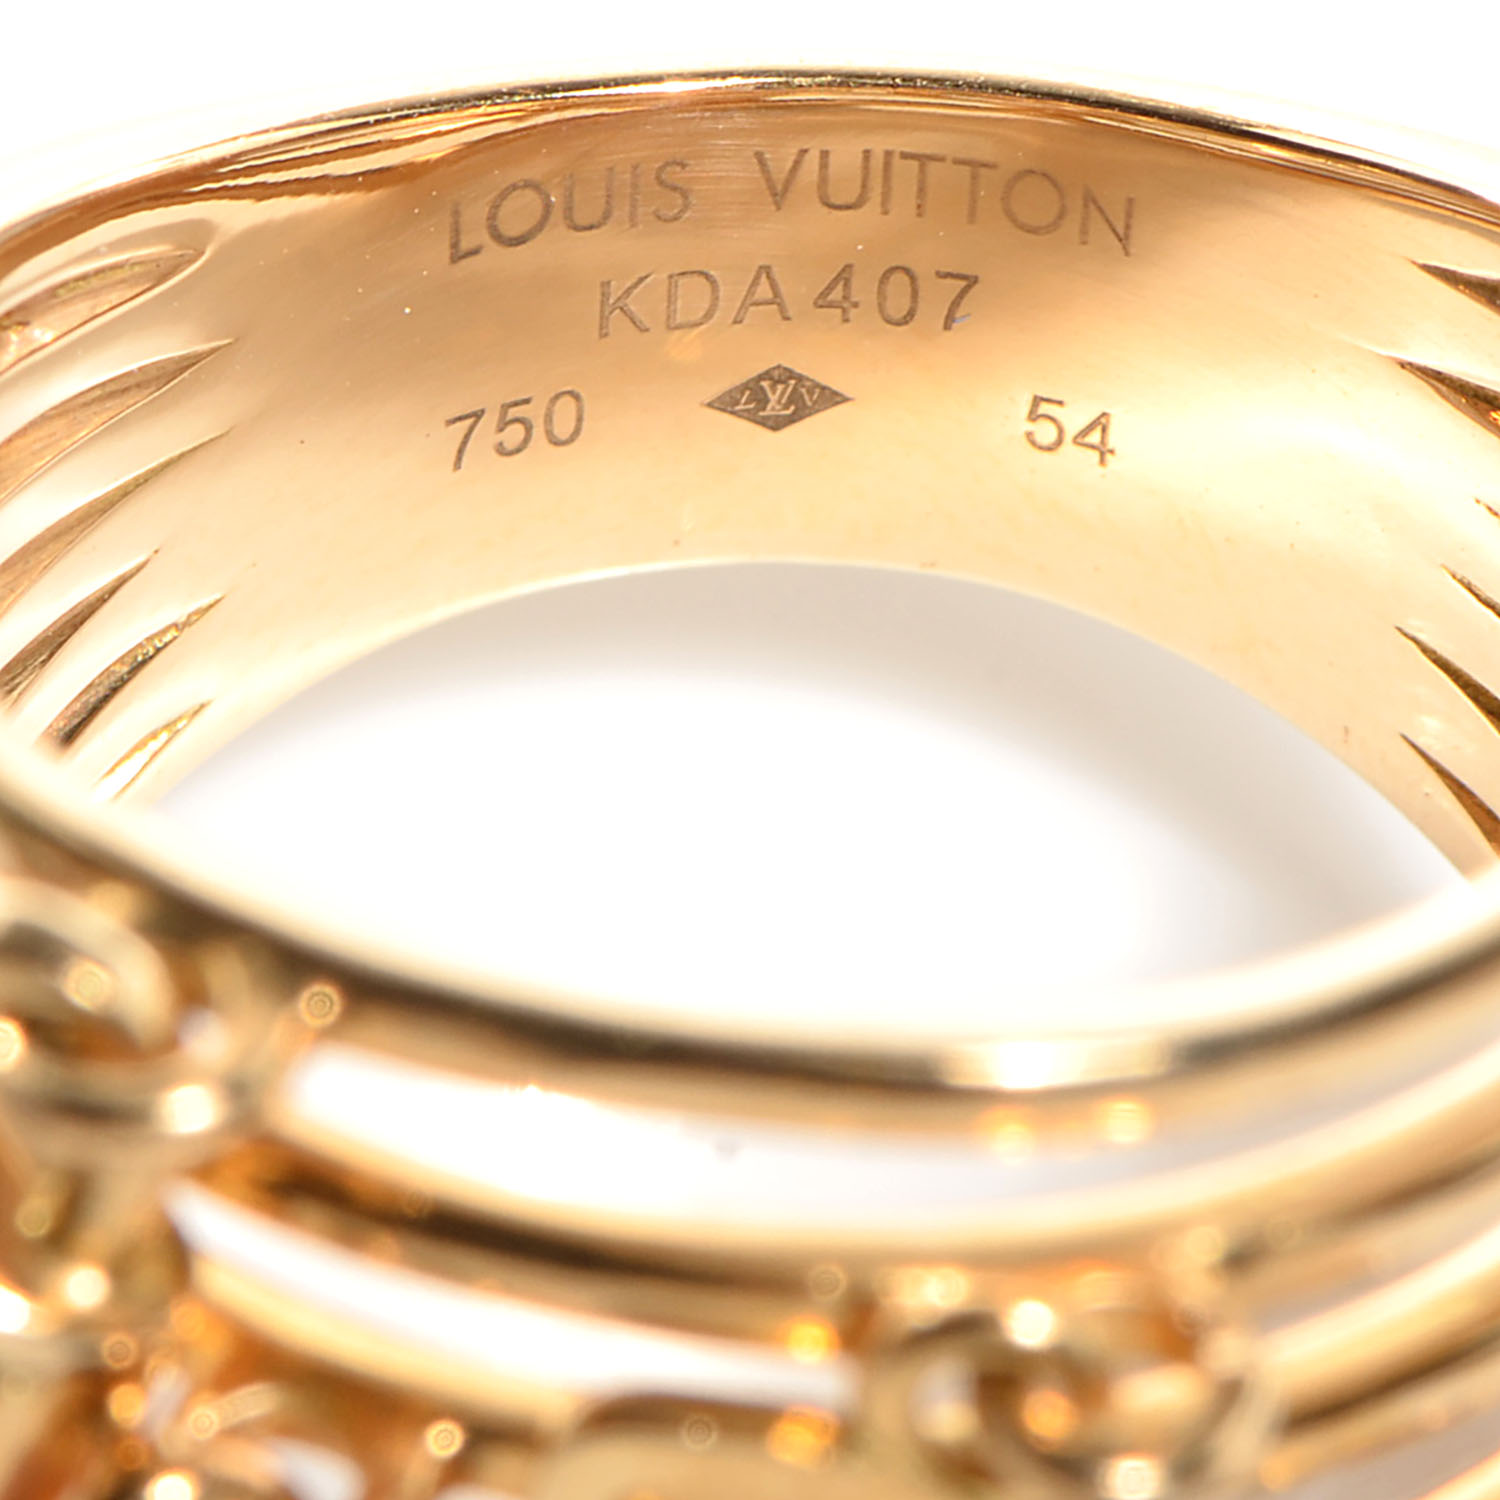 LOUIS VUITTON 18K Yellow Gold Pearl Monogram Ring 54 US 6.75 77087